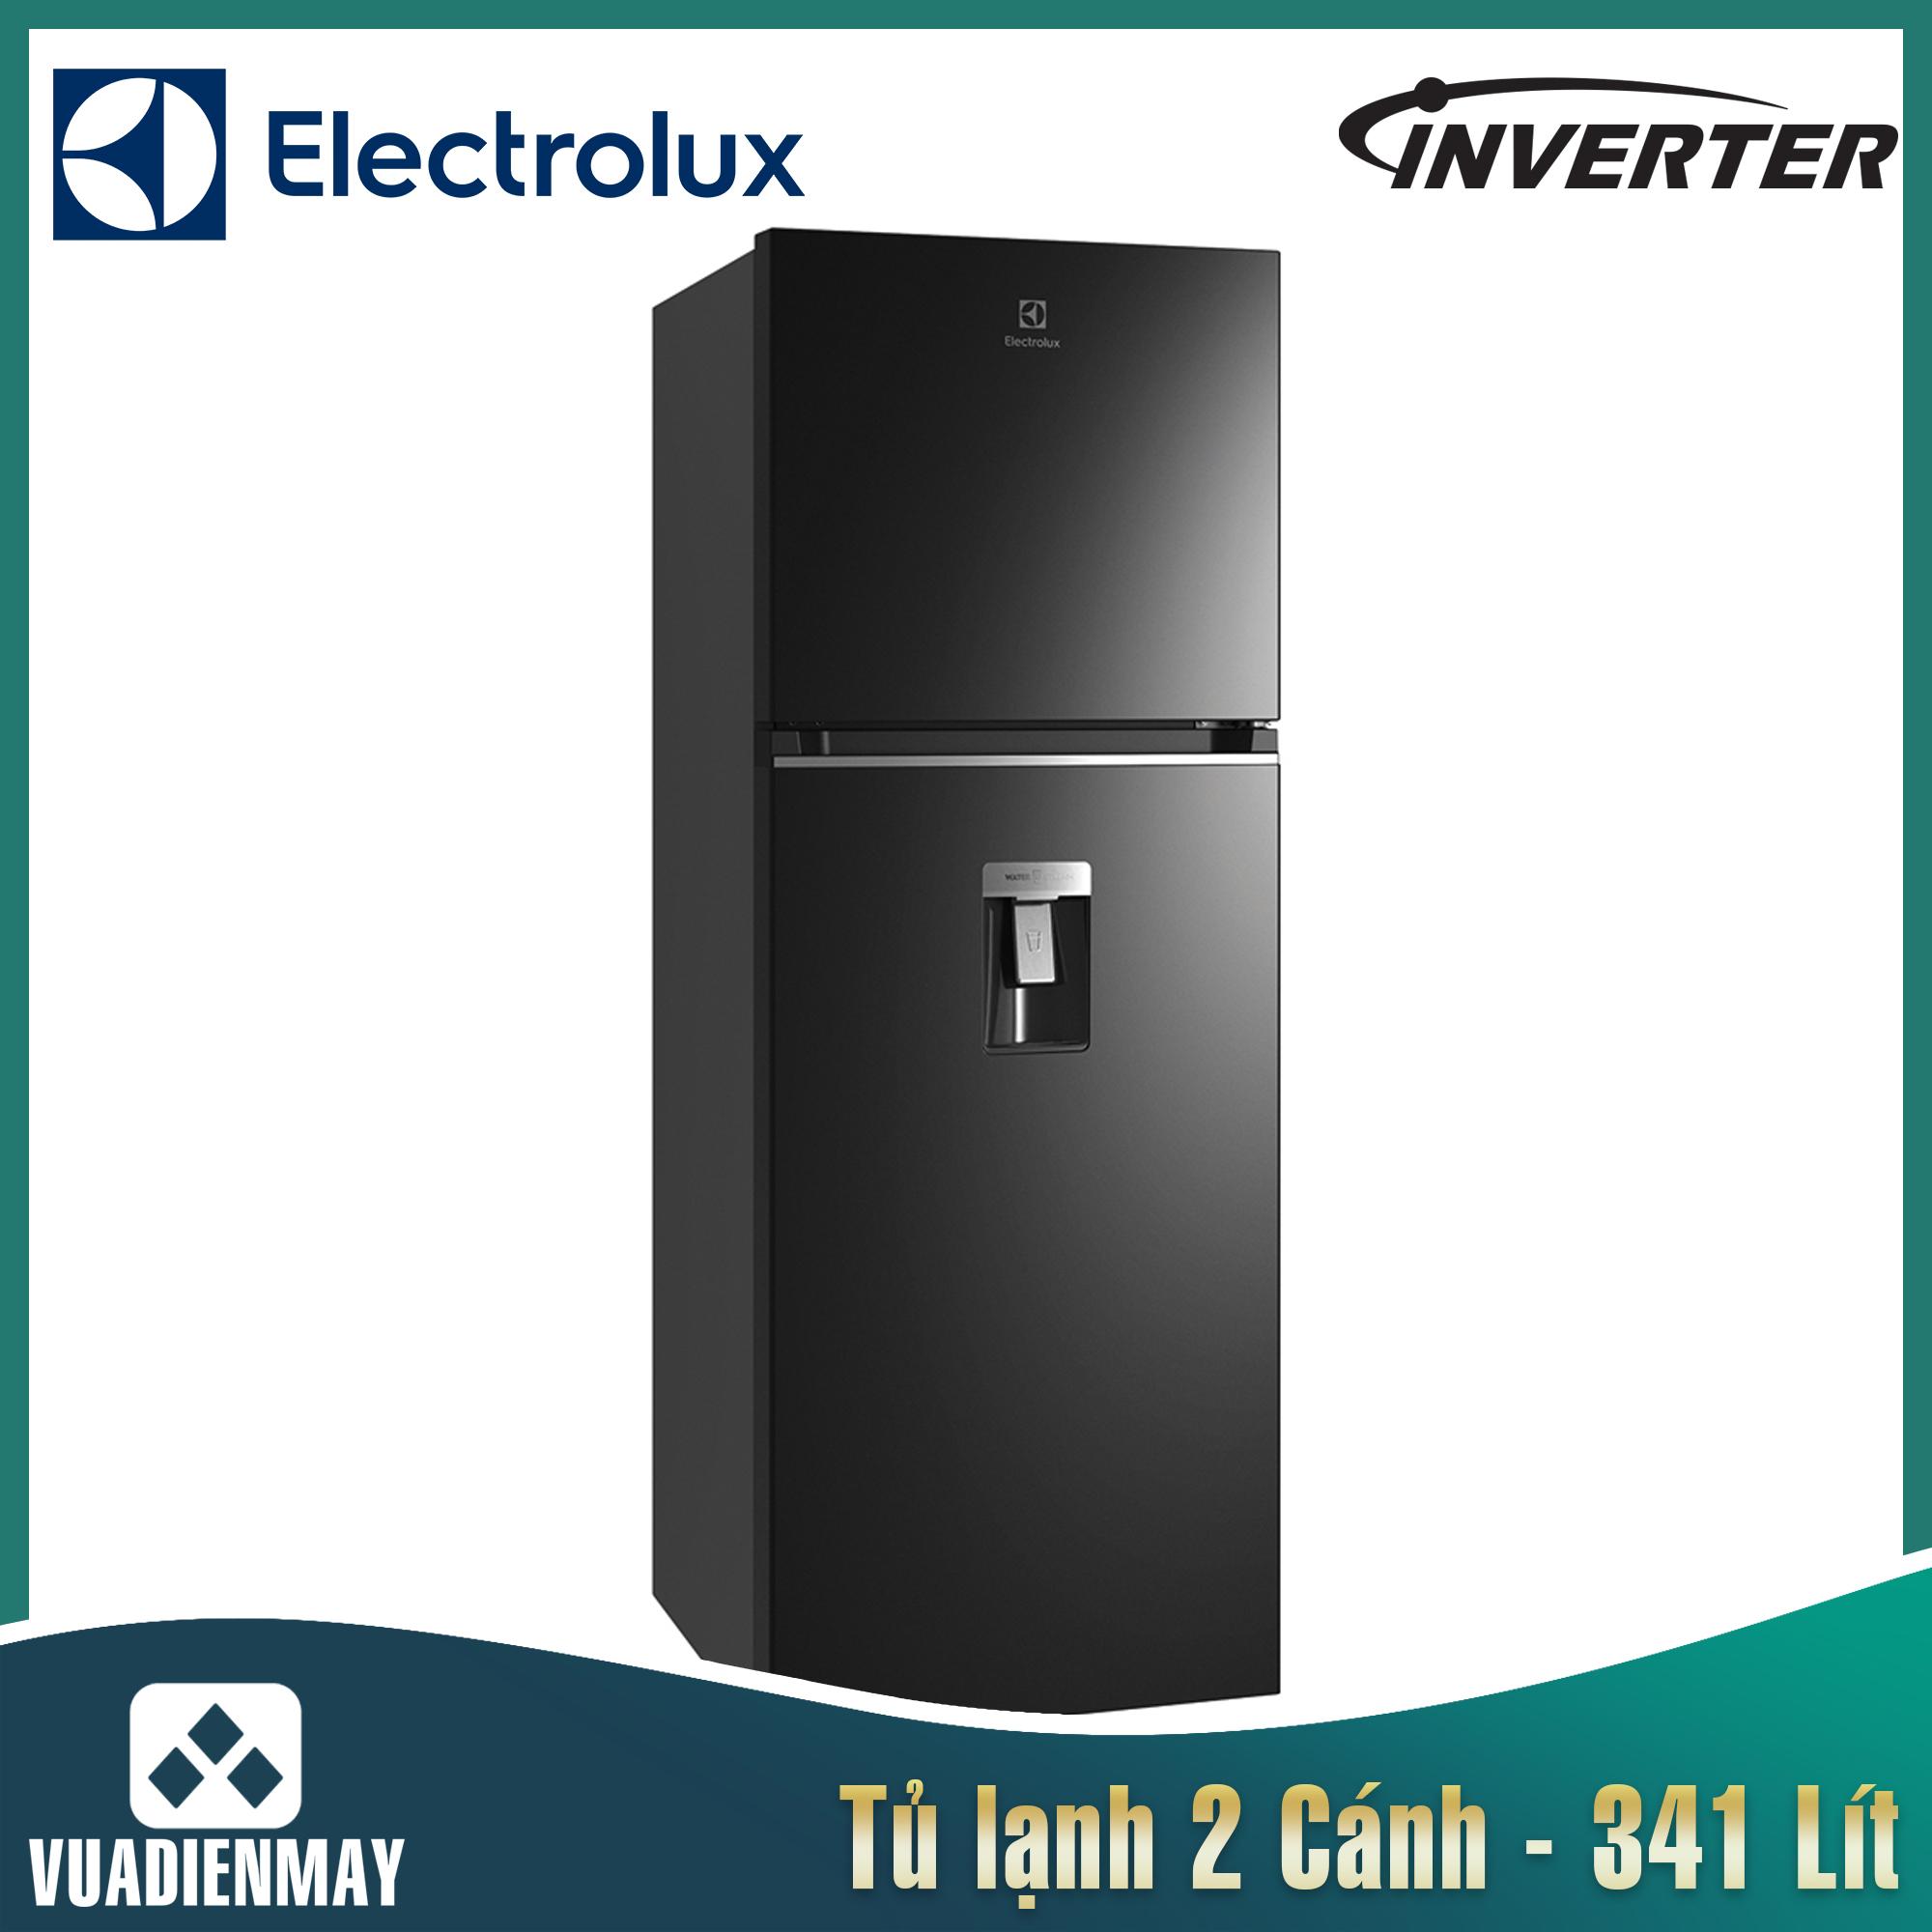 Tủ lạnh Electrolux Inverter 341 lít đen